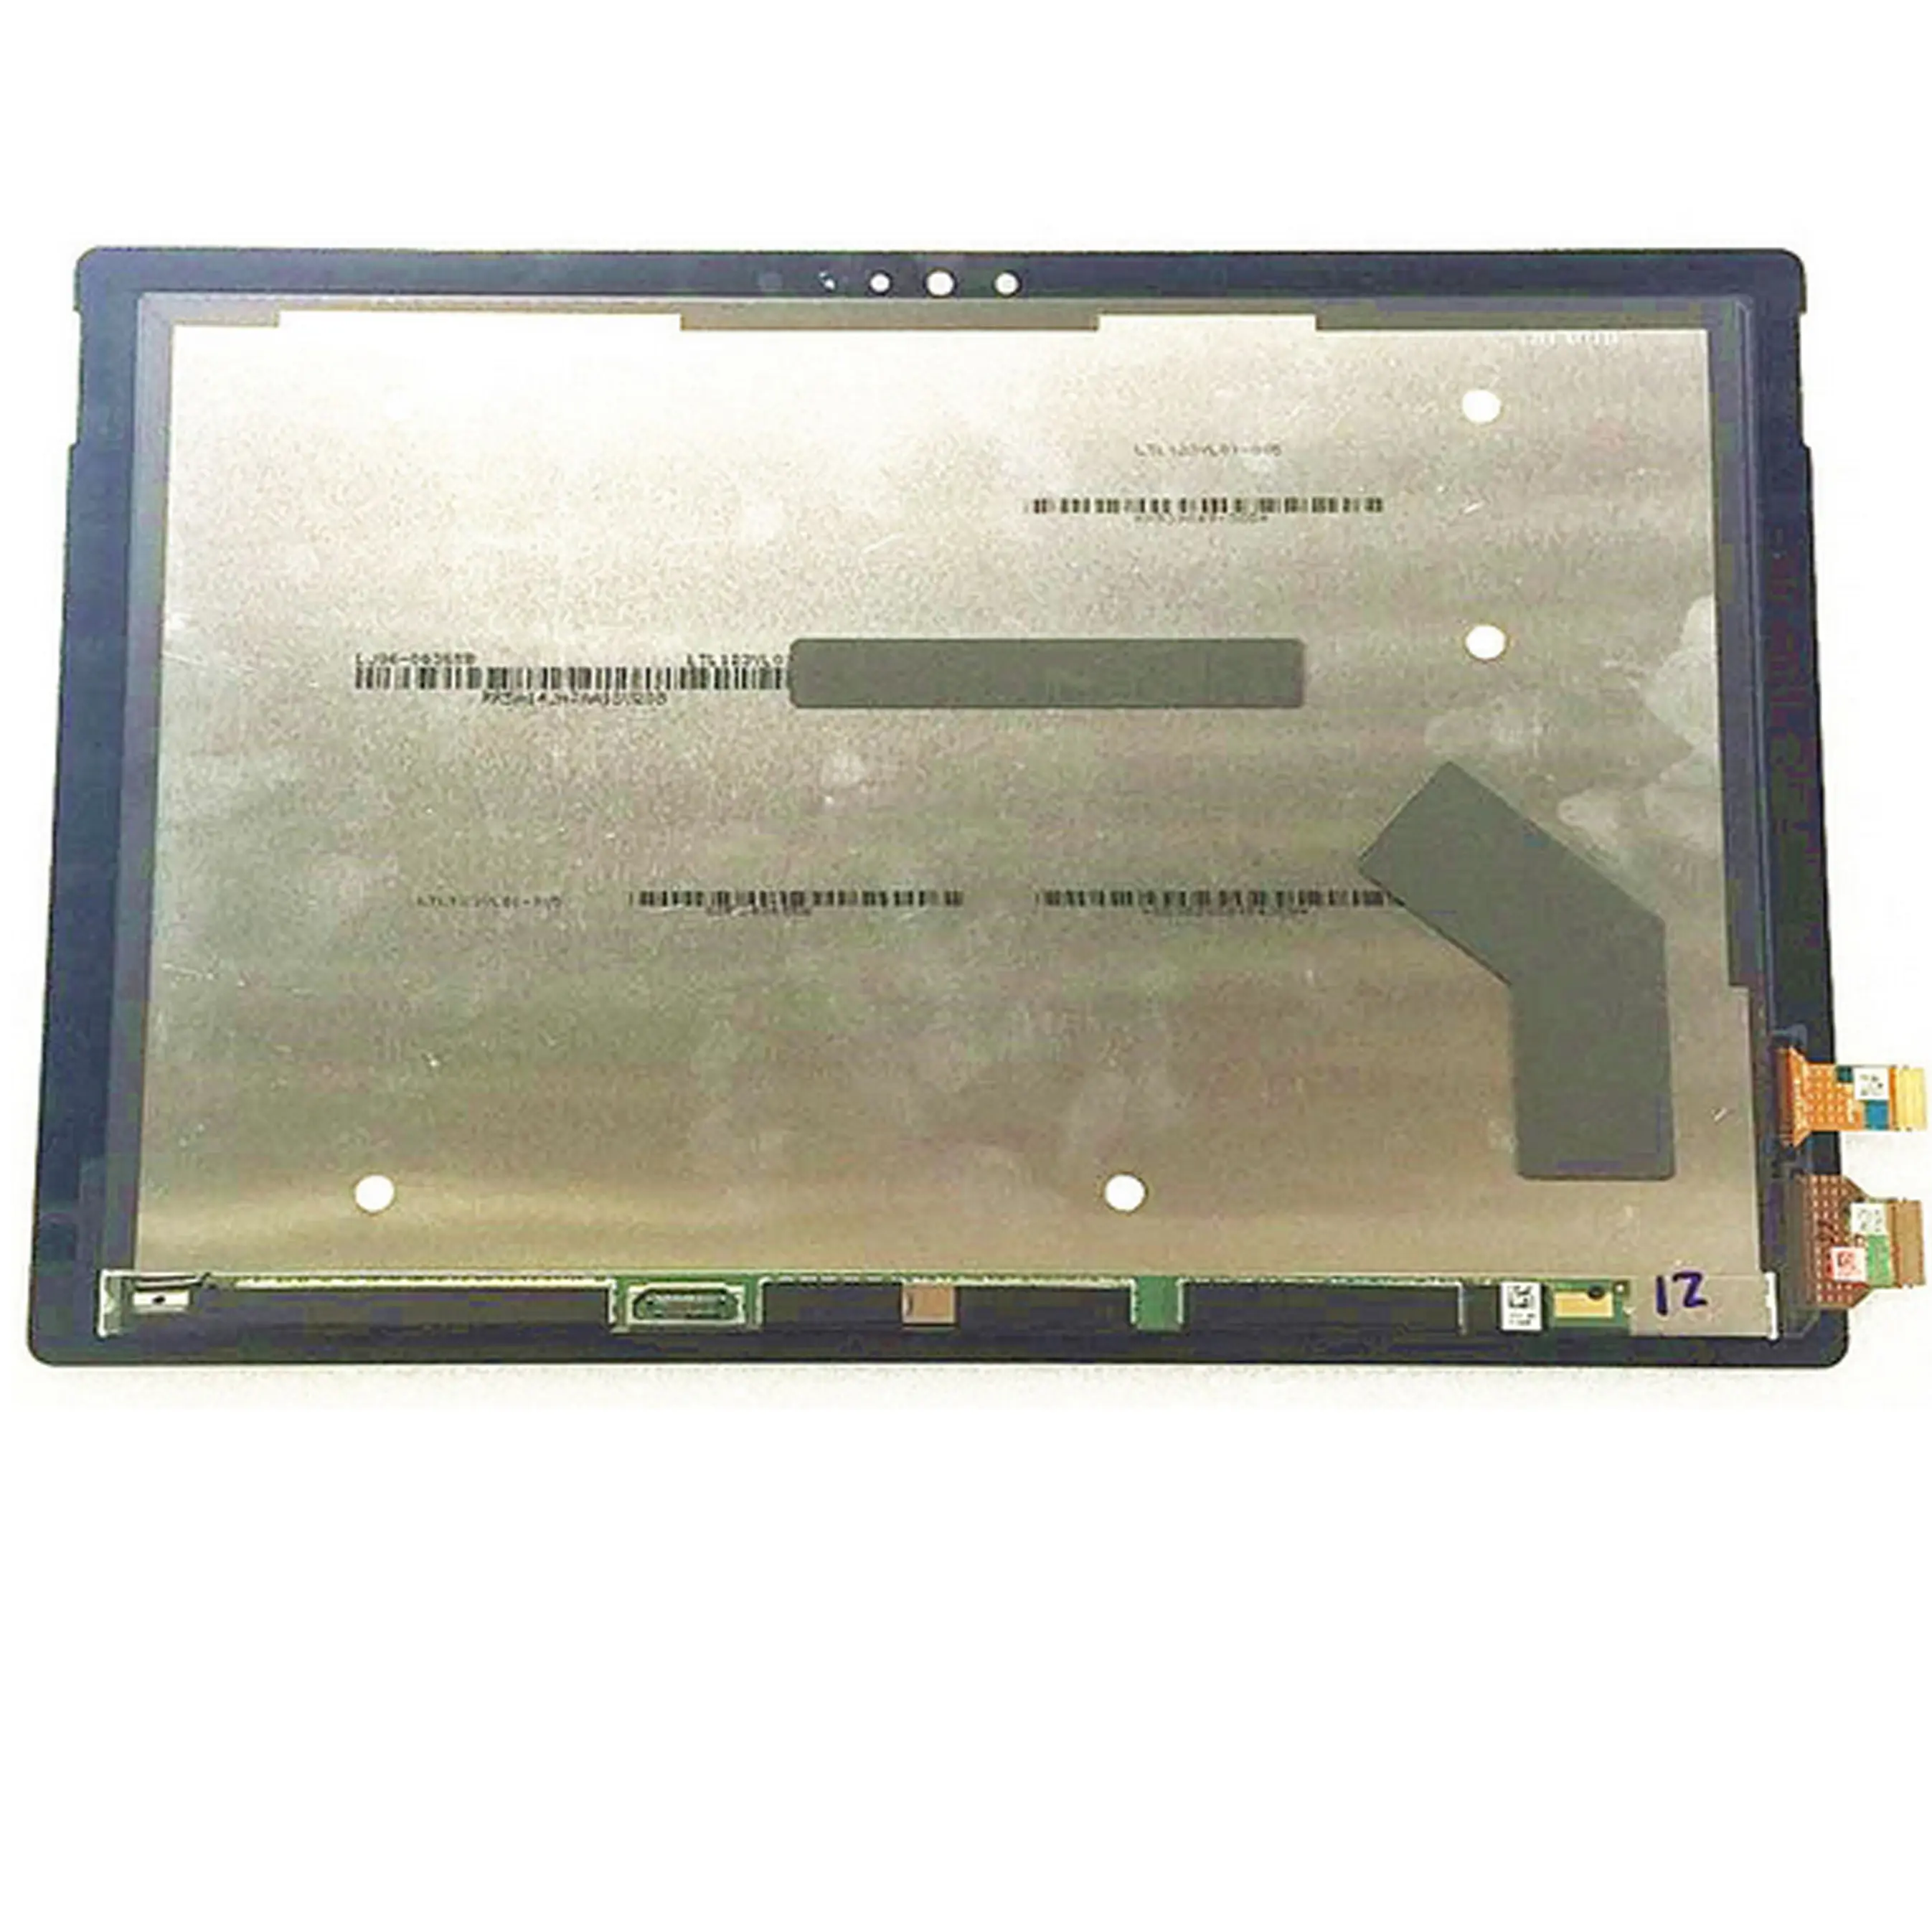 LTL123VL01/LTL123YL01 002 006 לגלוש-ace Pro 4 1724 עם מגע LCD תצוגת להתחרות